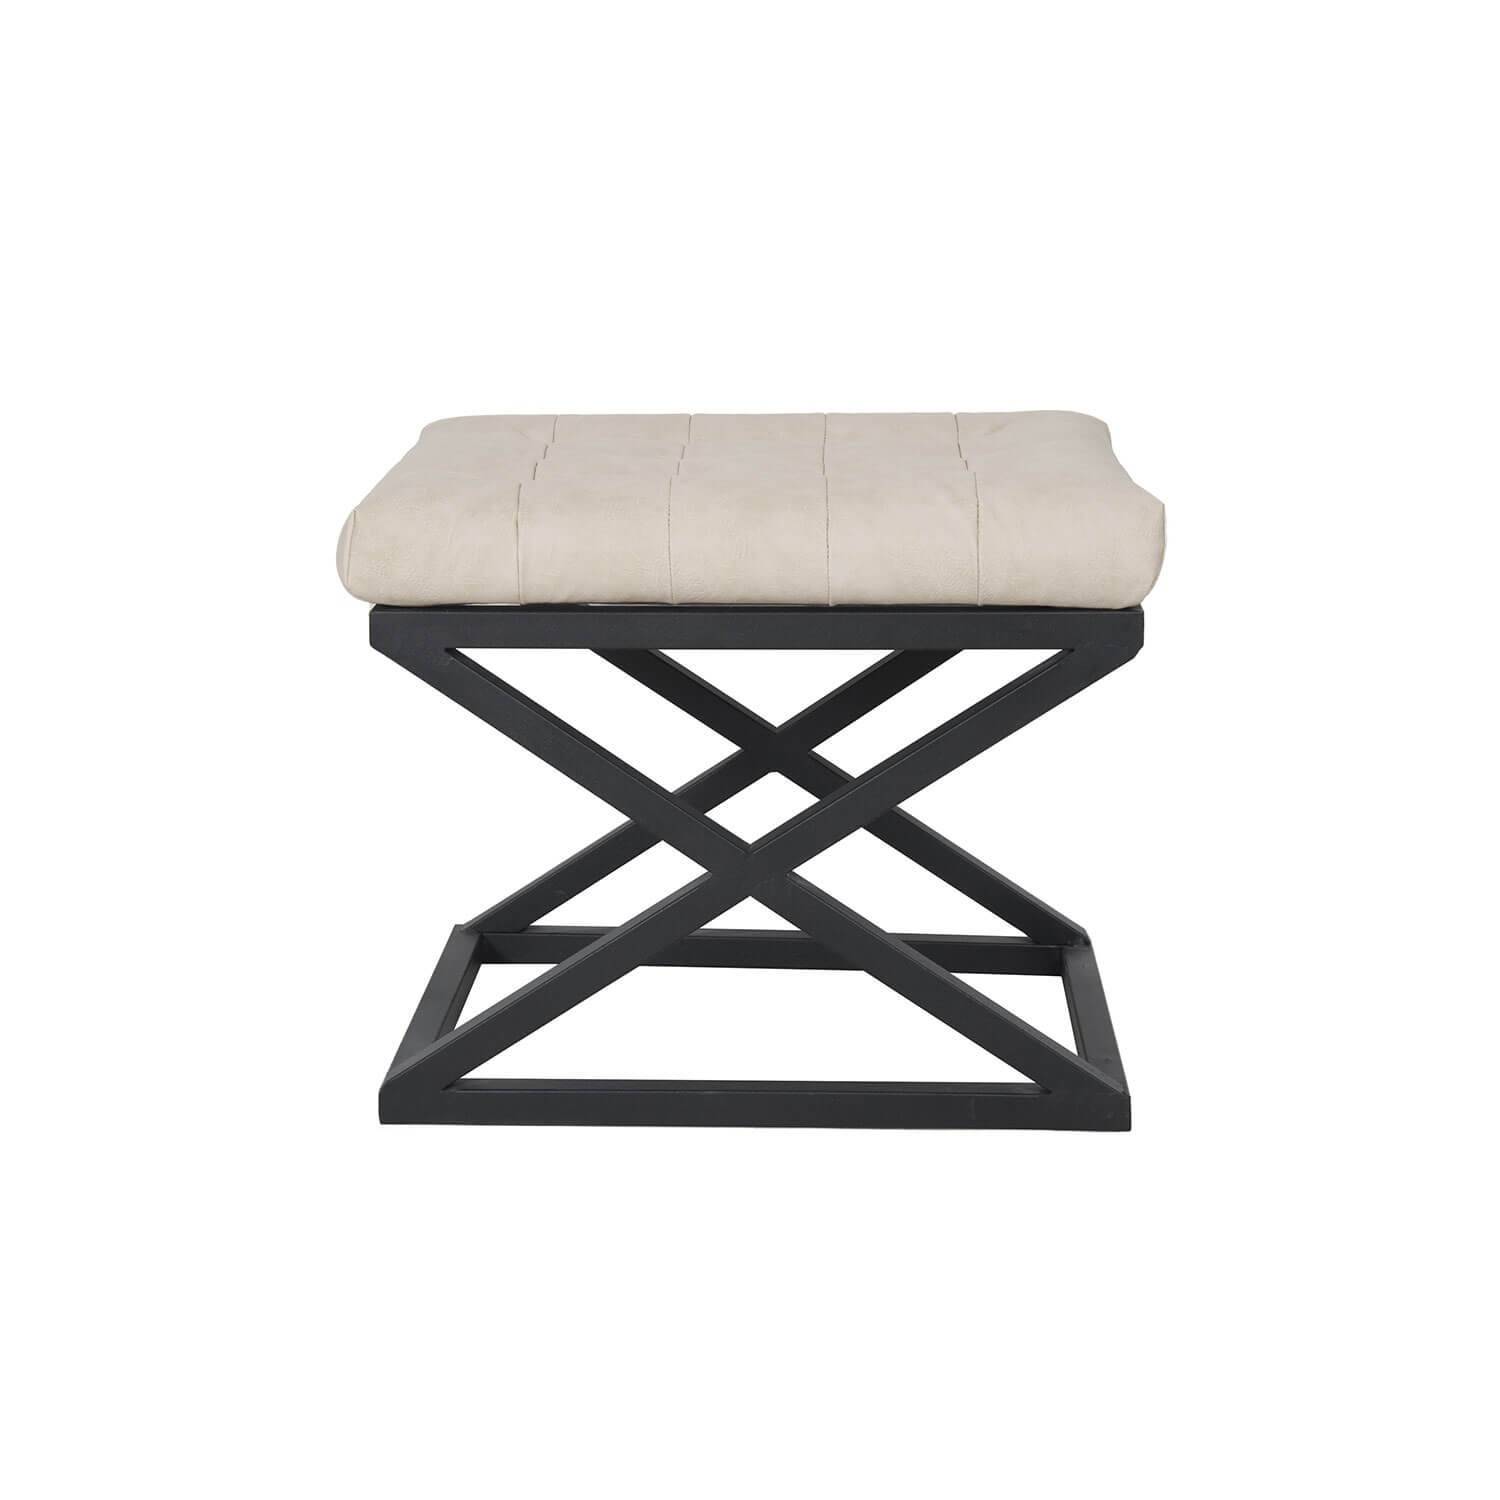 Taburete Ulad de metal negro y terciopelo blanco crema, asiento tapizado